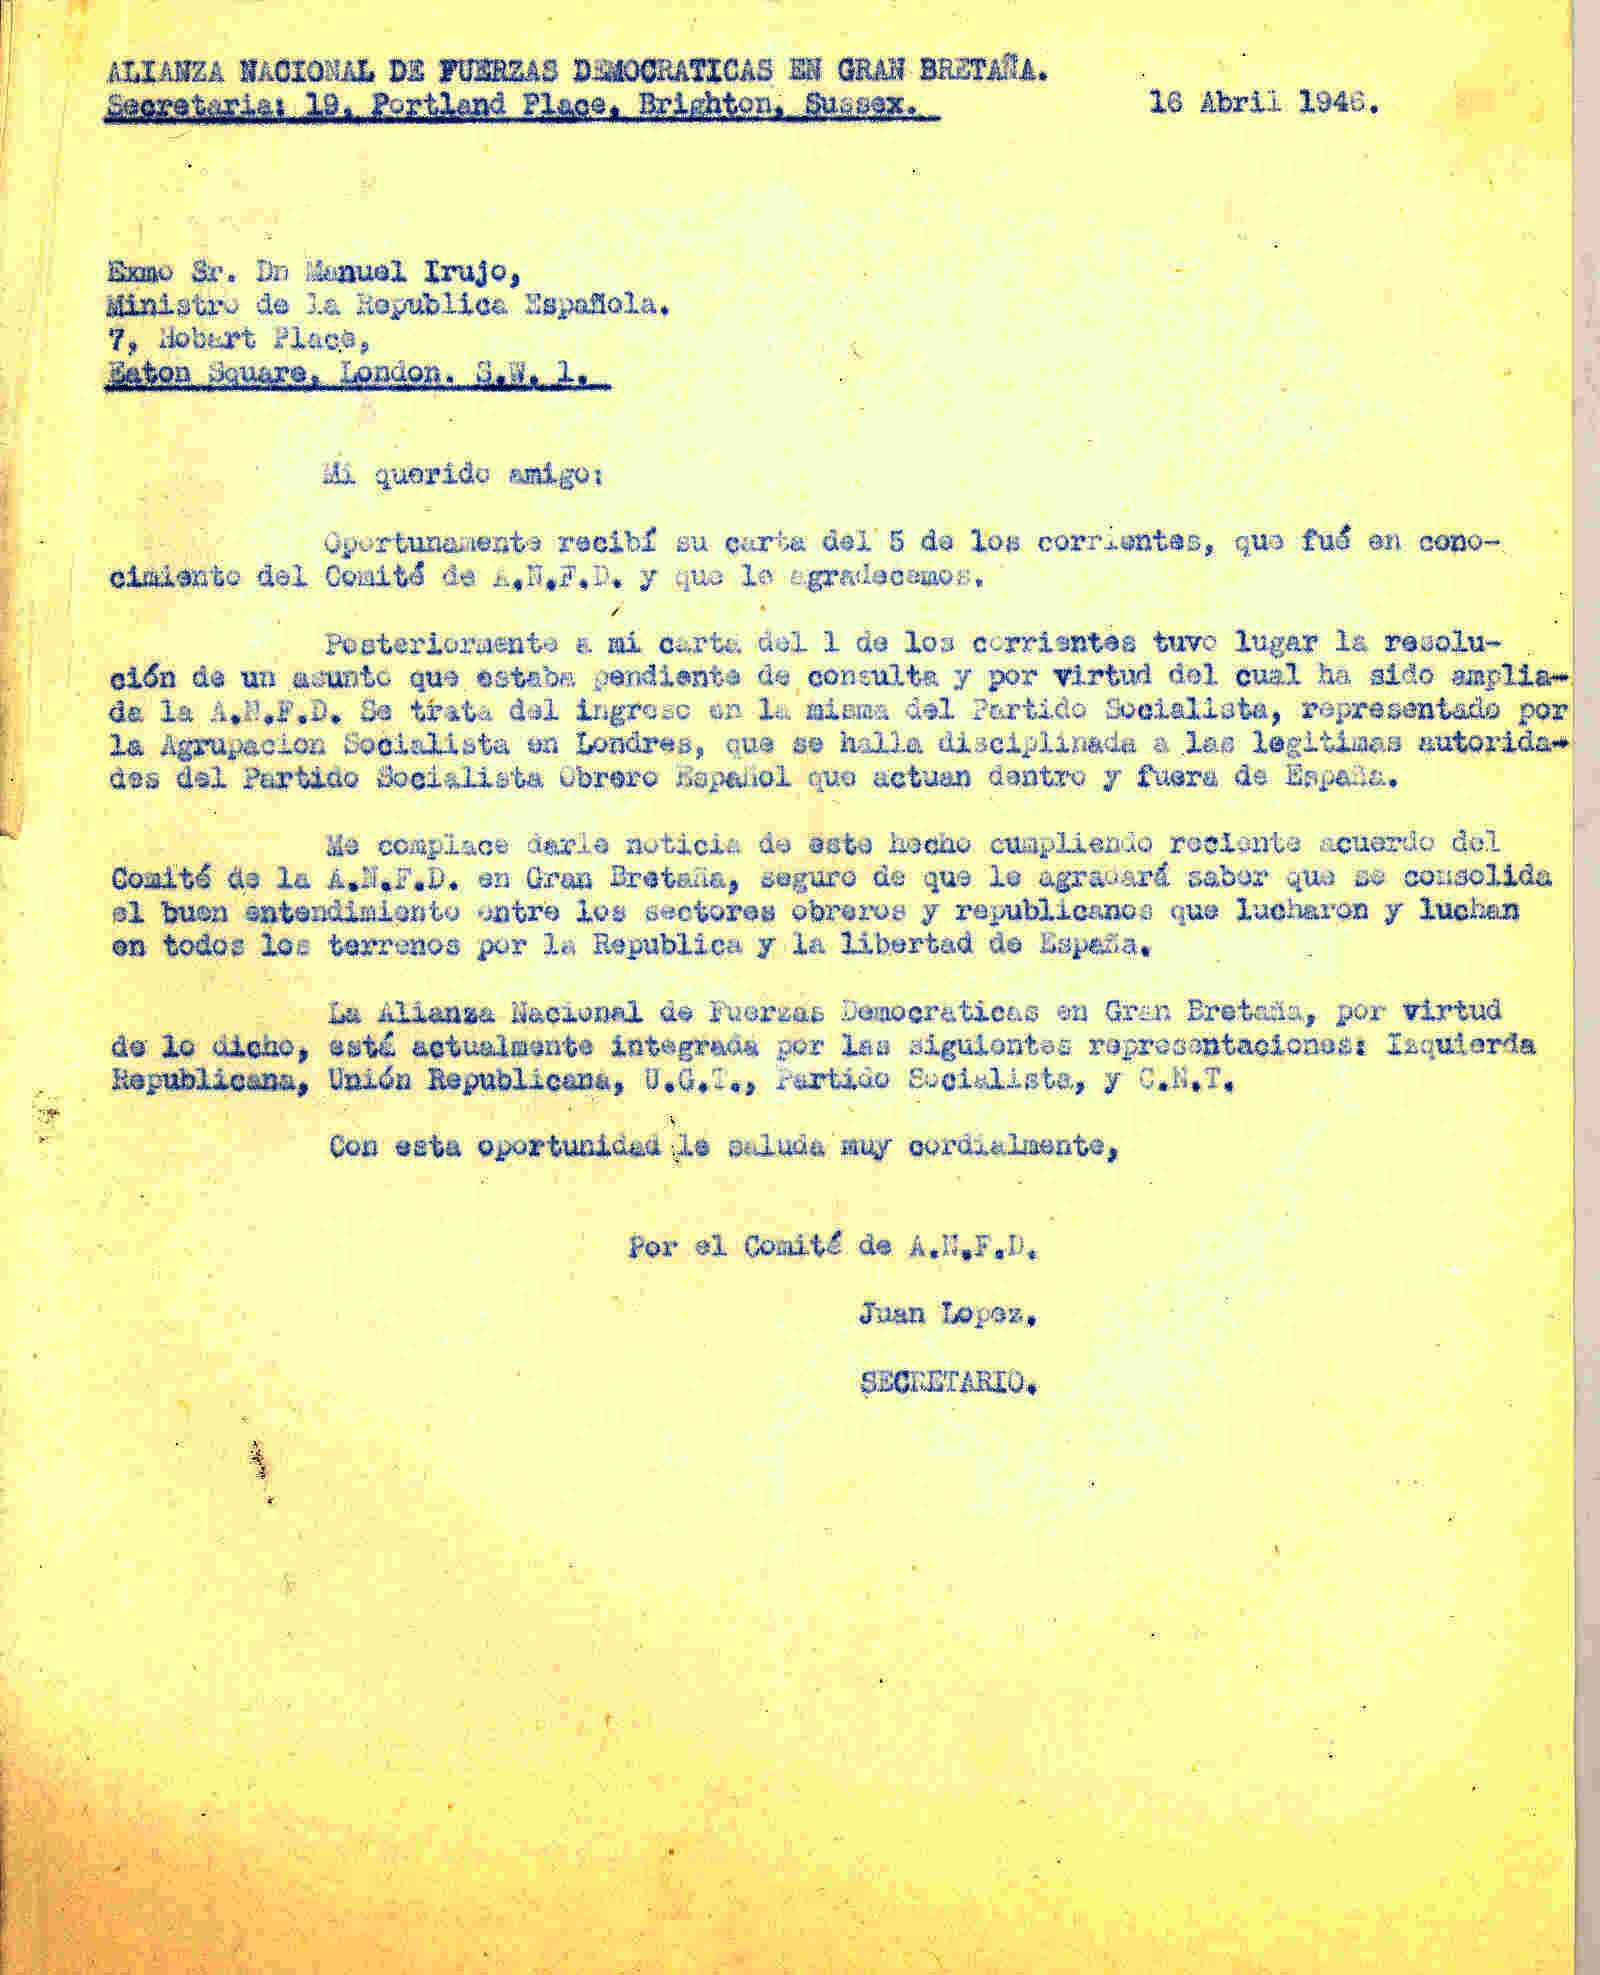 Carta a Manuel de Irujo, Ministro de la República, en la que comunica el ingreso del Partido Socialista en la Alianza Nacional de Fuerzas Democráticas de Gran Bretaña